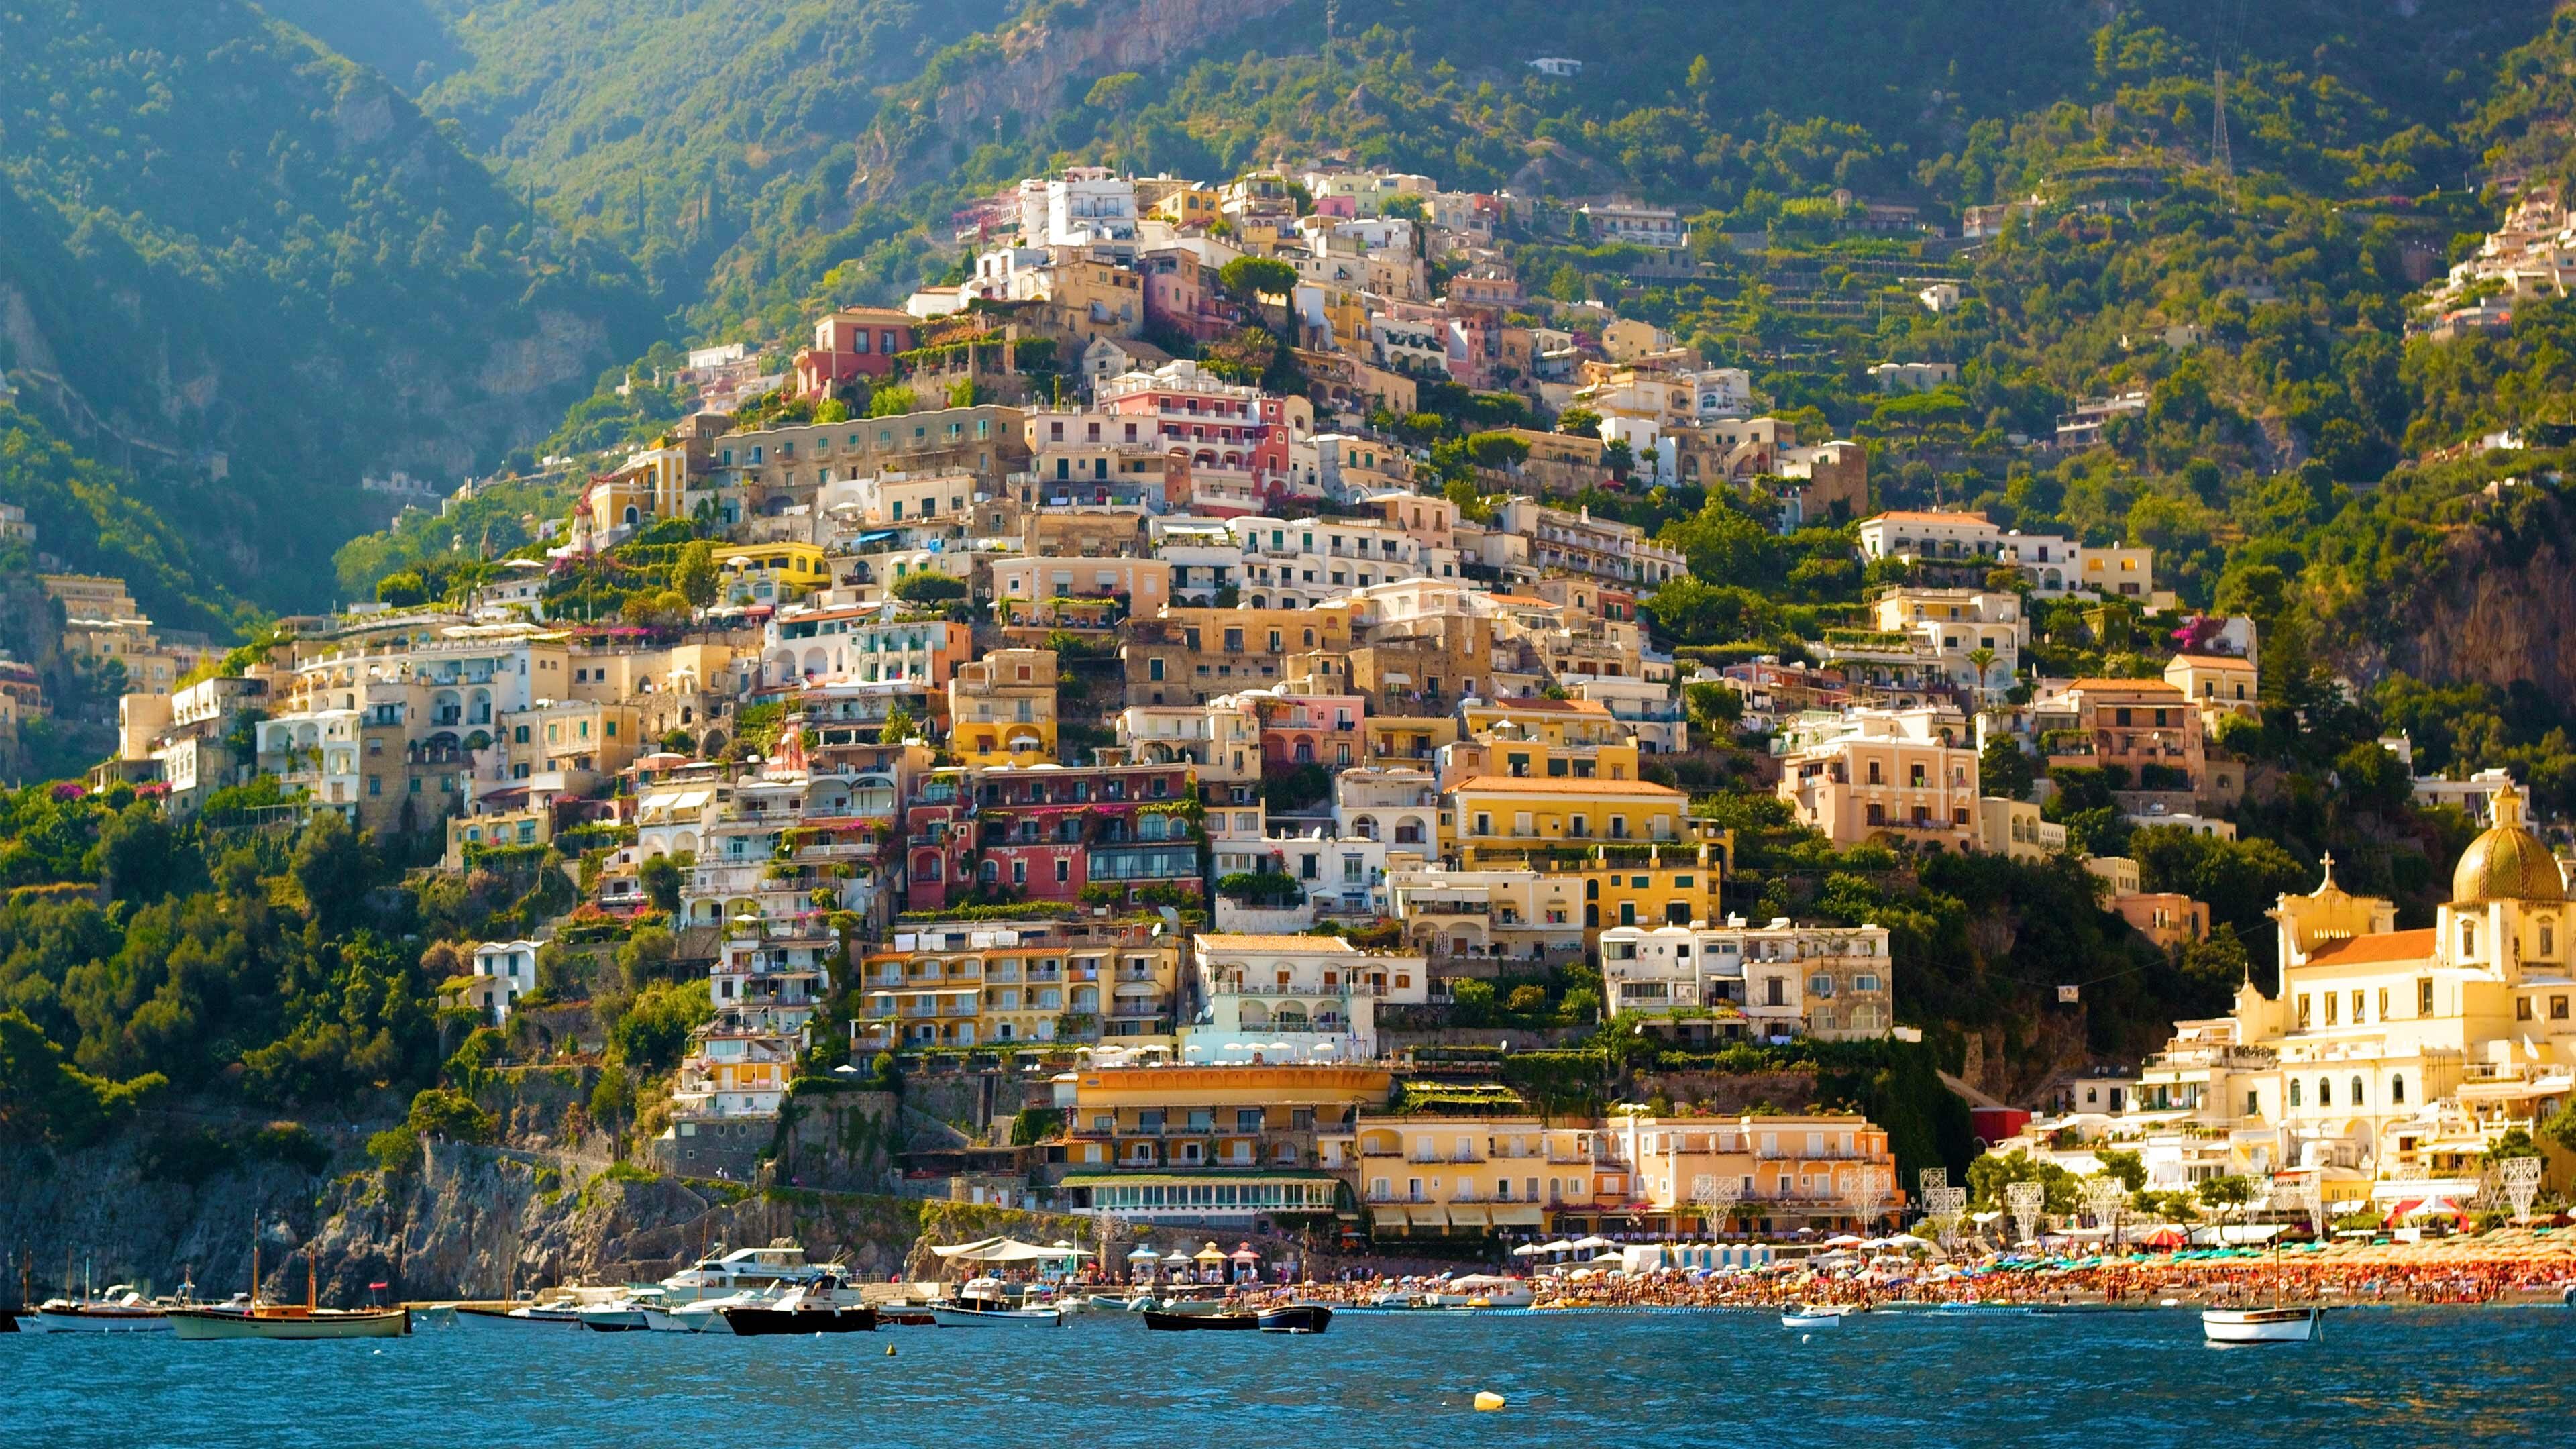 amalfi coast cruises